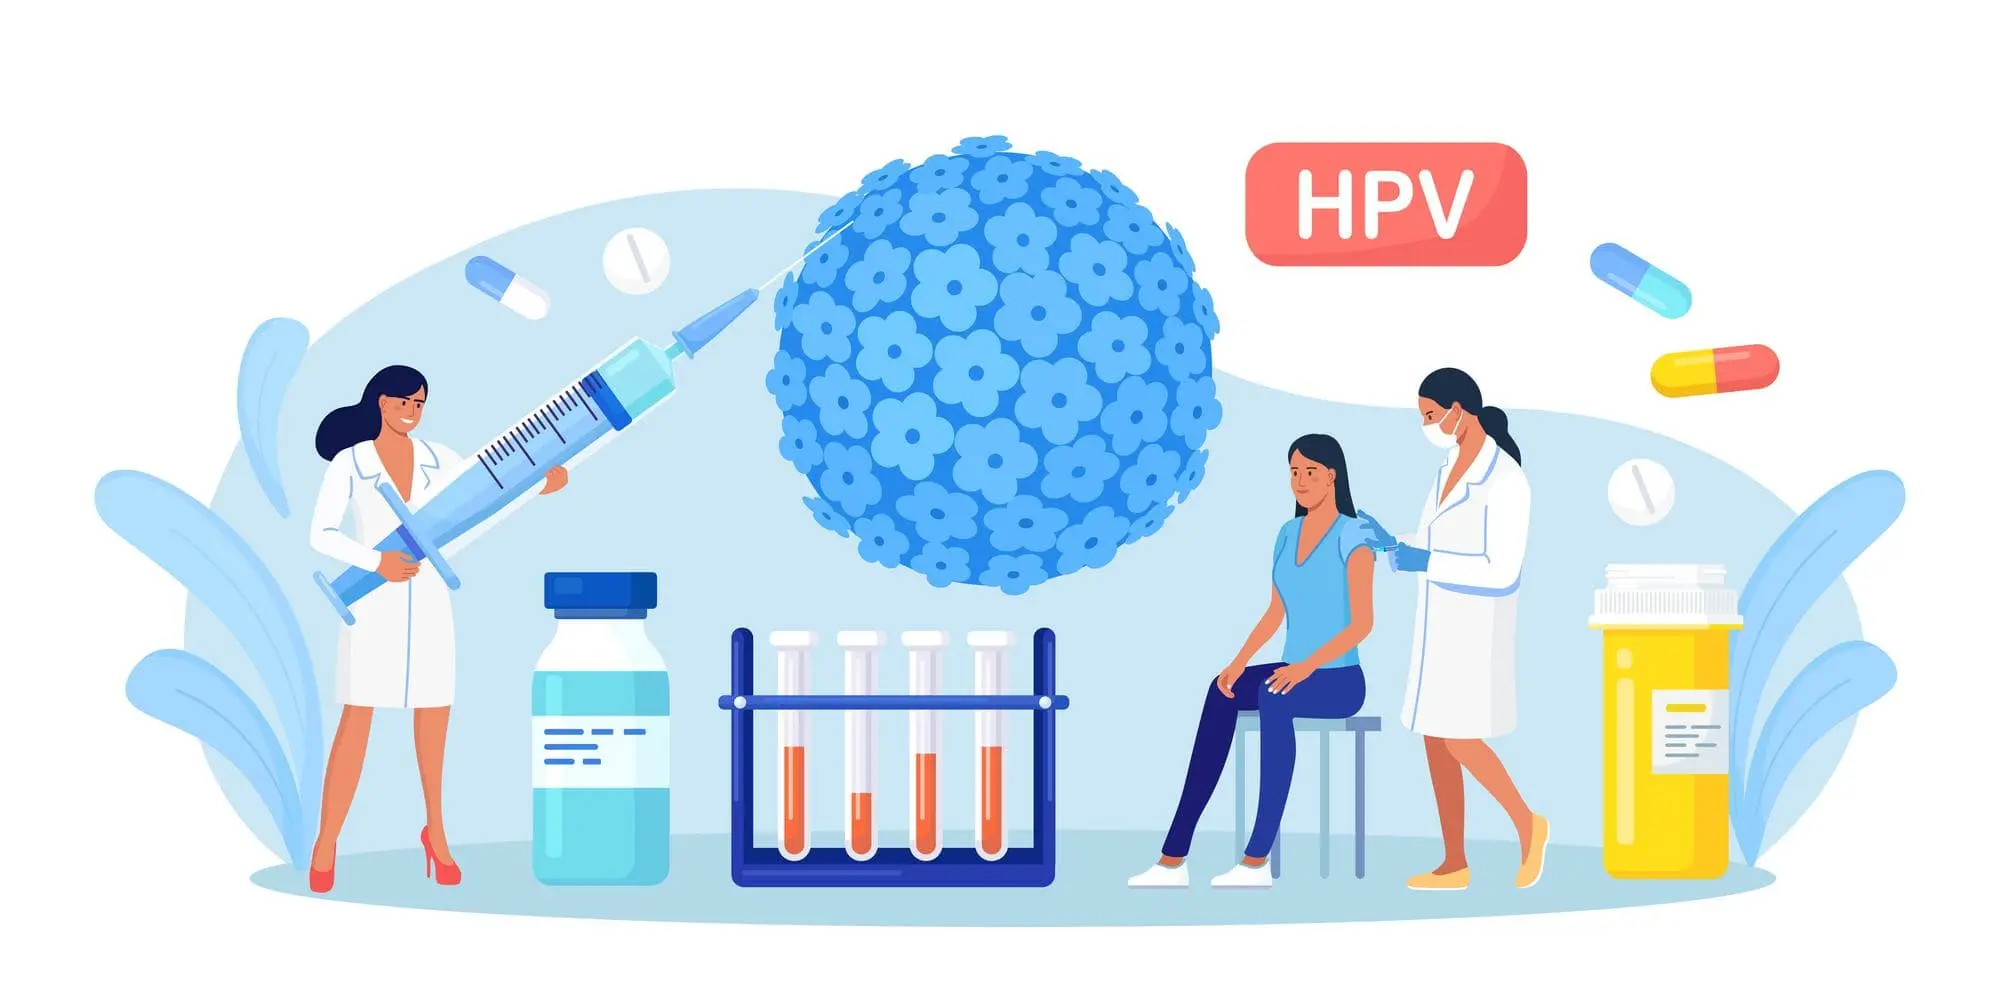 واکسیناسیون HPV